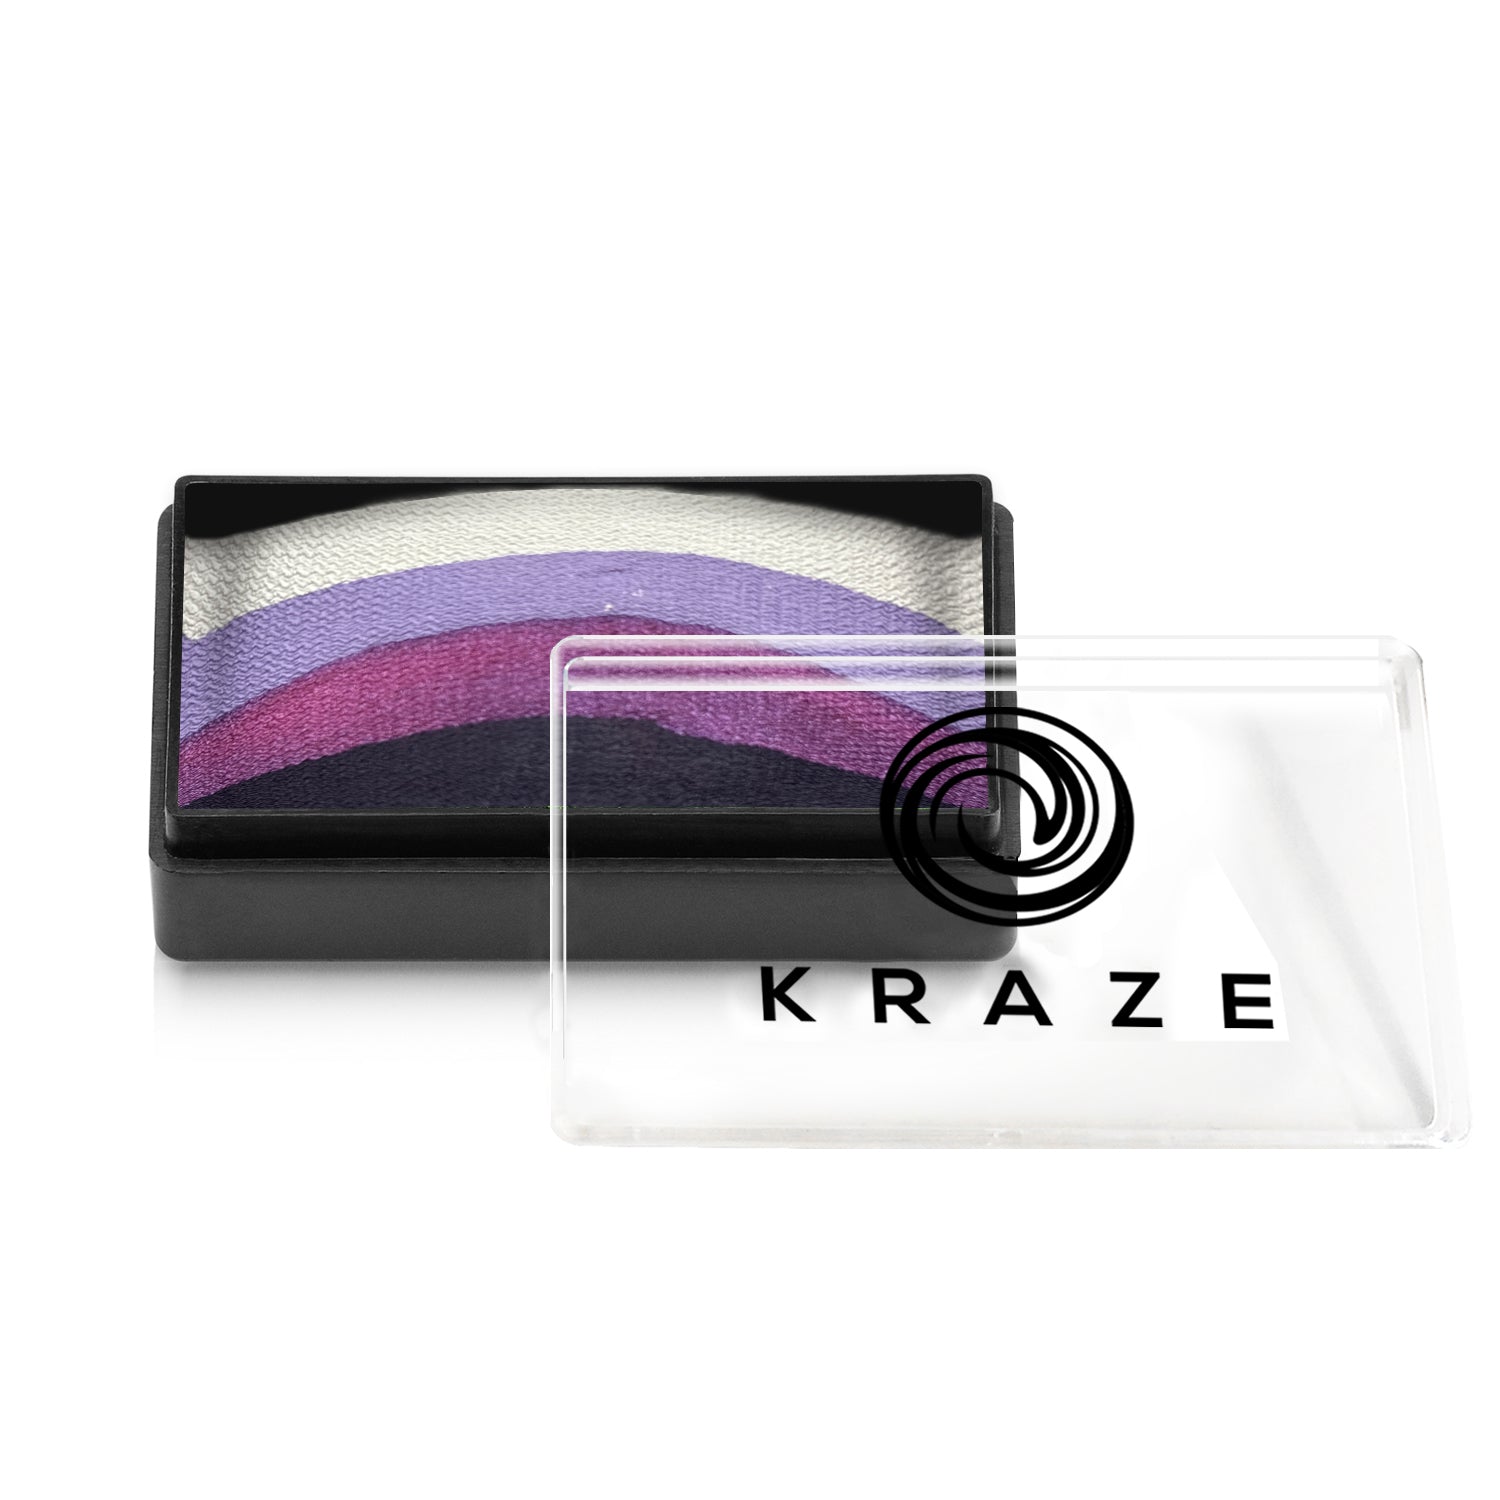 Kraze FX Dome Stroke by Linnea Novak - Lavender (25 gm)